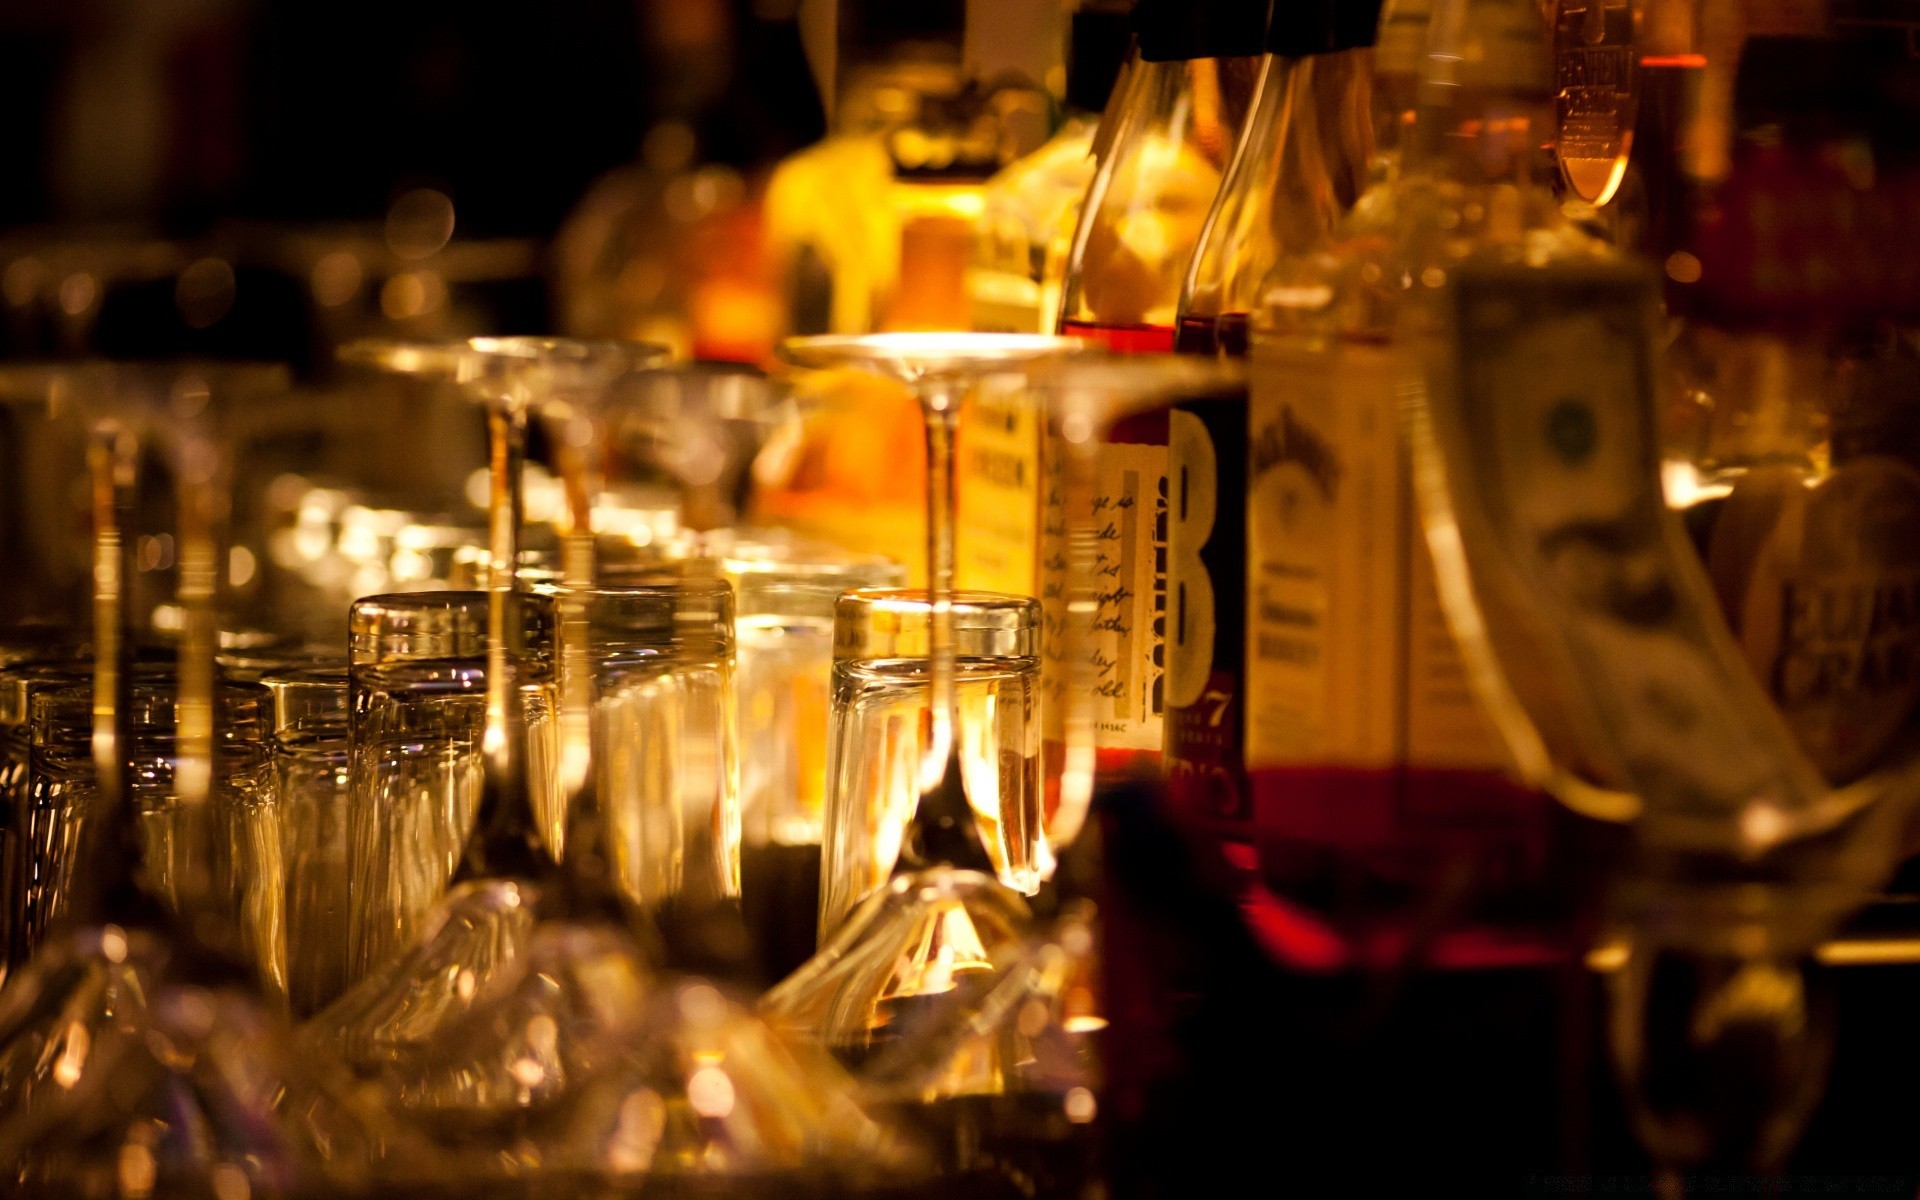 напитки бар ресторан вина пить алкоголь праздник участник стекло свеча бутылка паб в помещении кафе ночная жизнь шампанское свет темный рождество